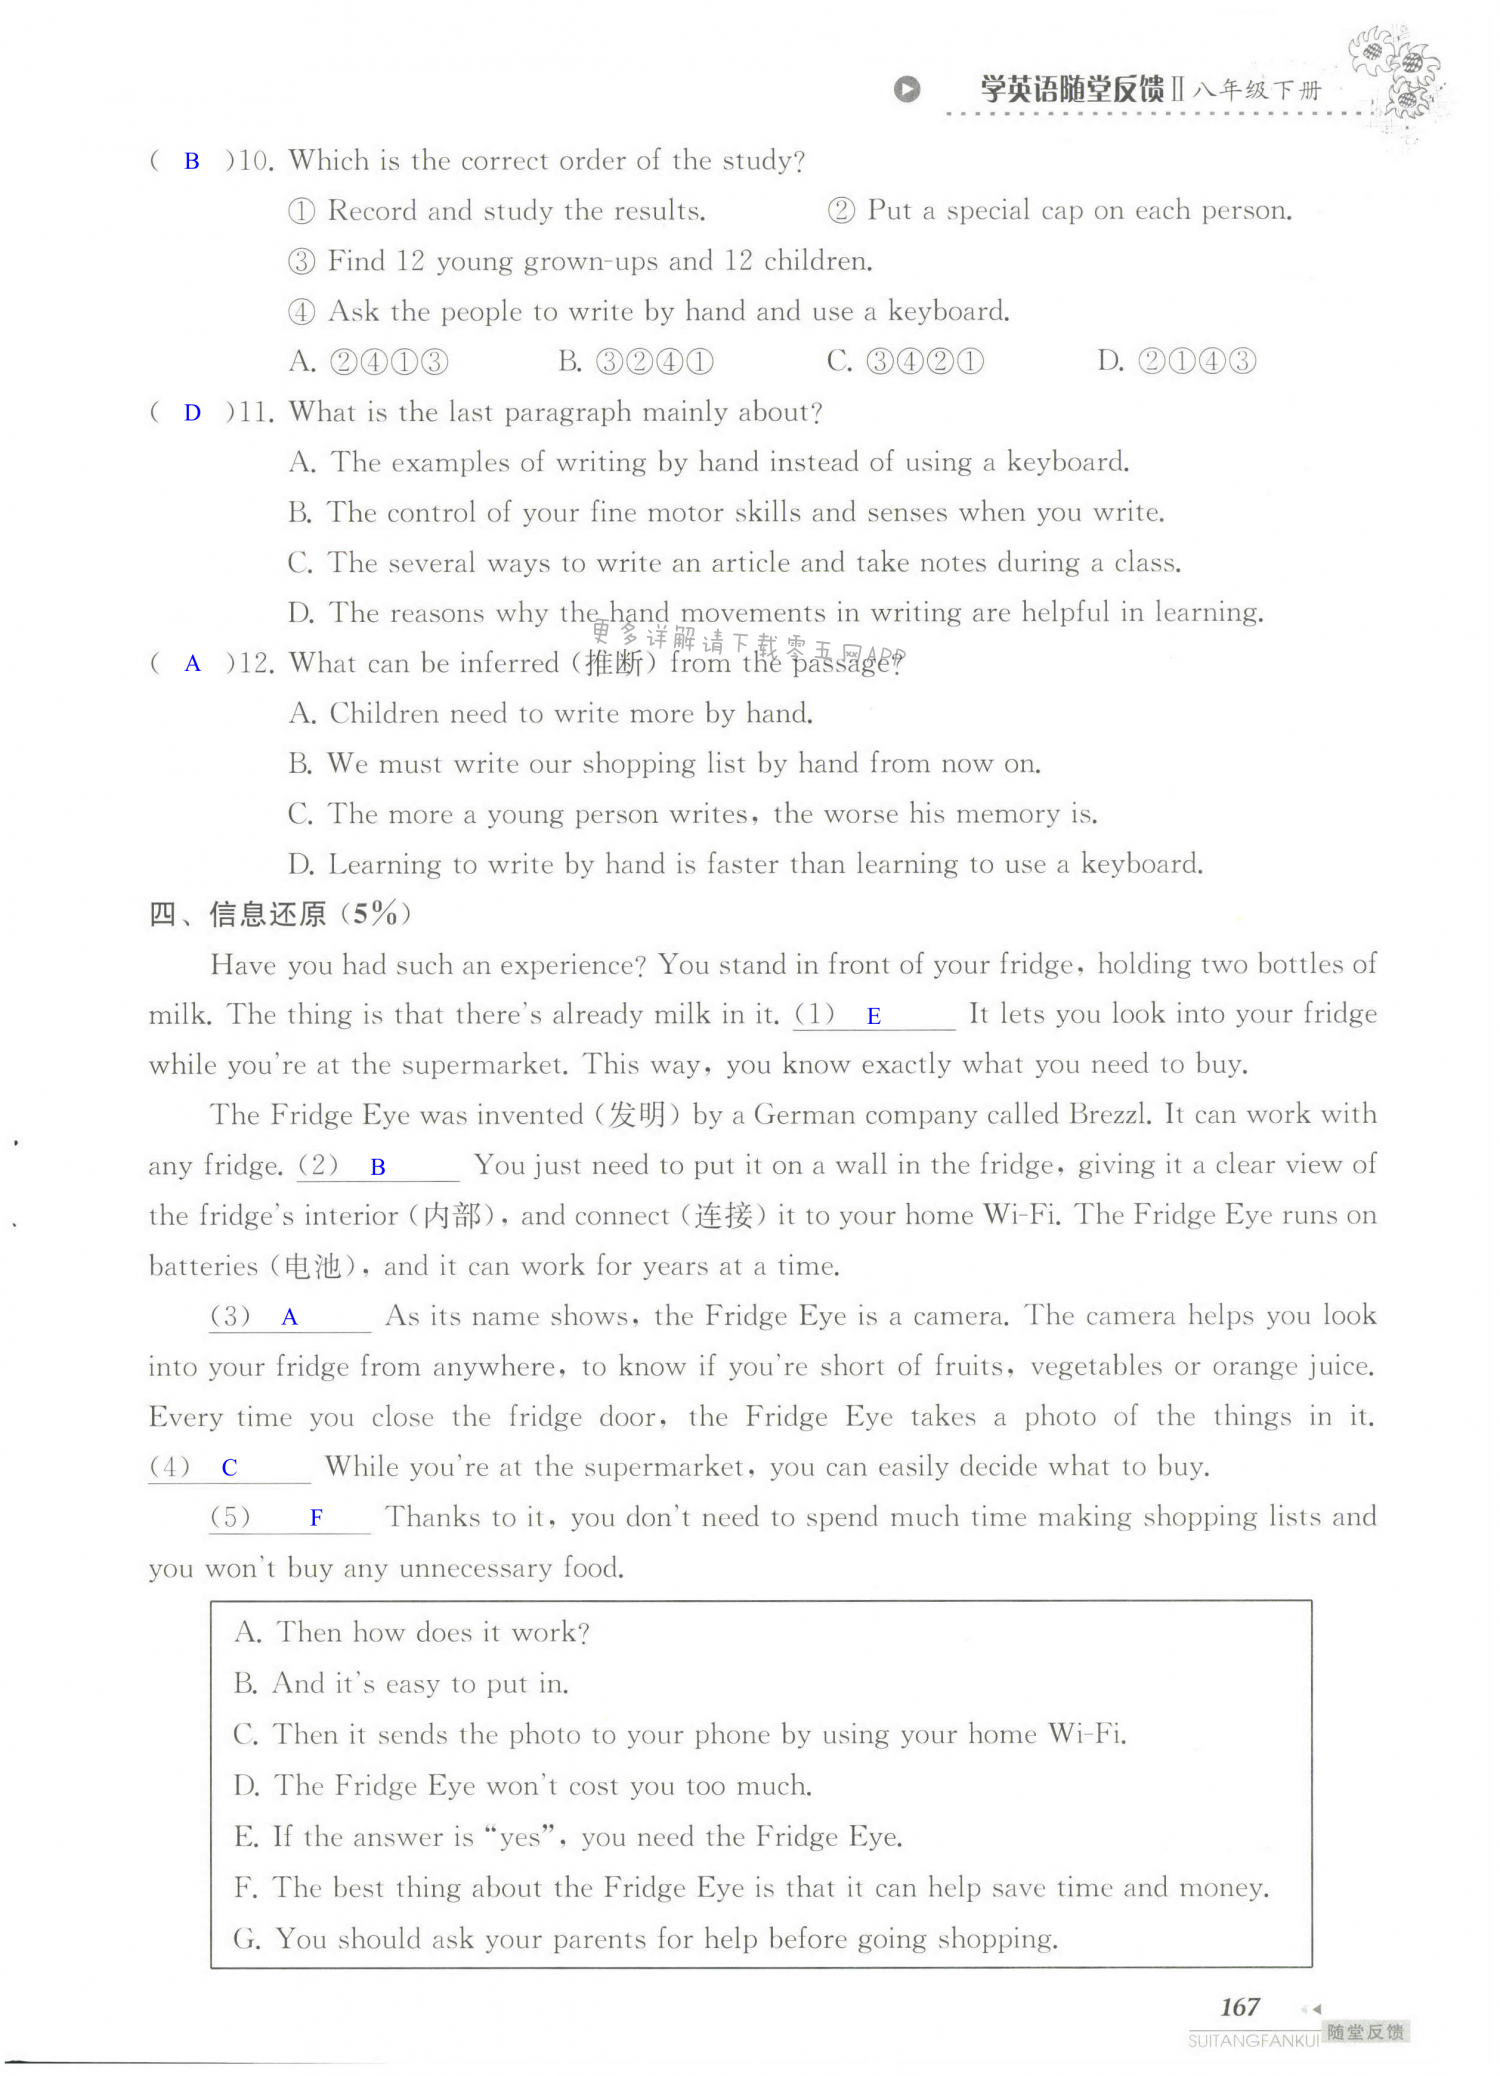 单元综合测试卷 Test for Unit 3 of 8B - 第167页